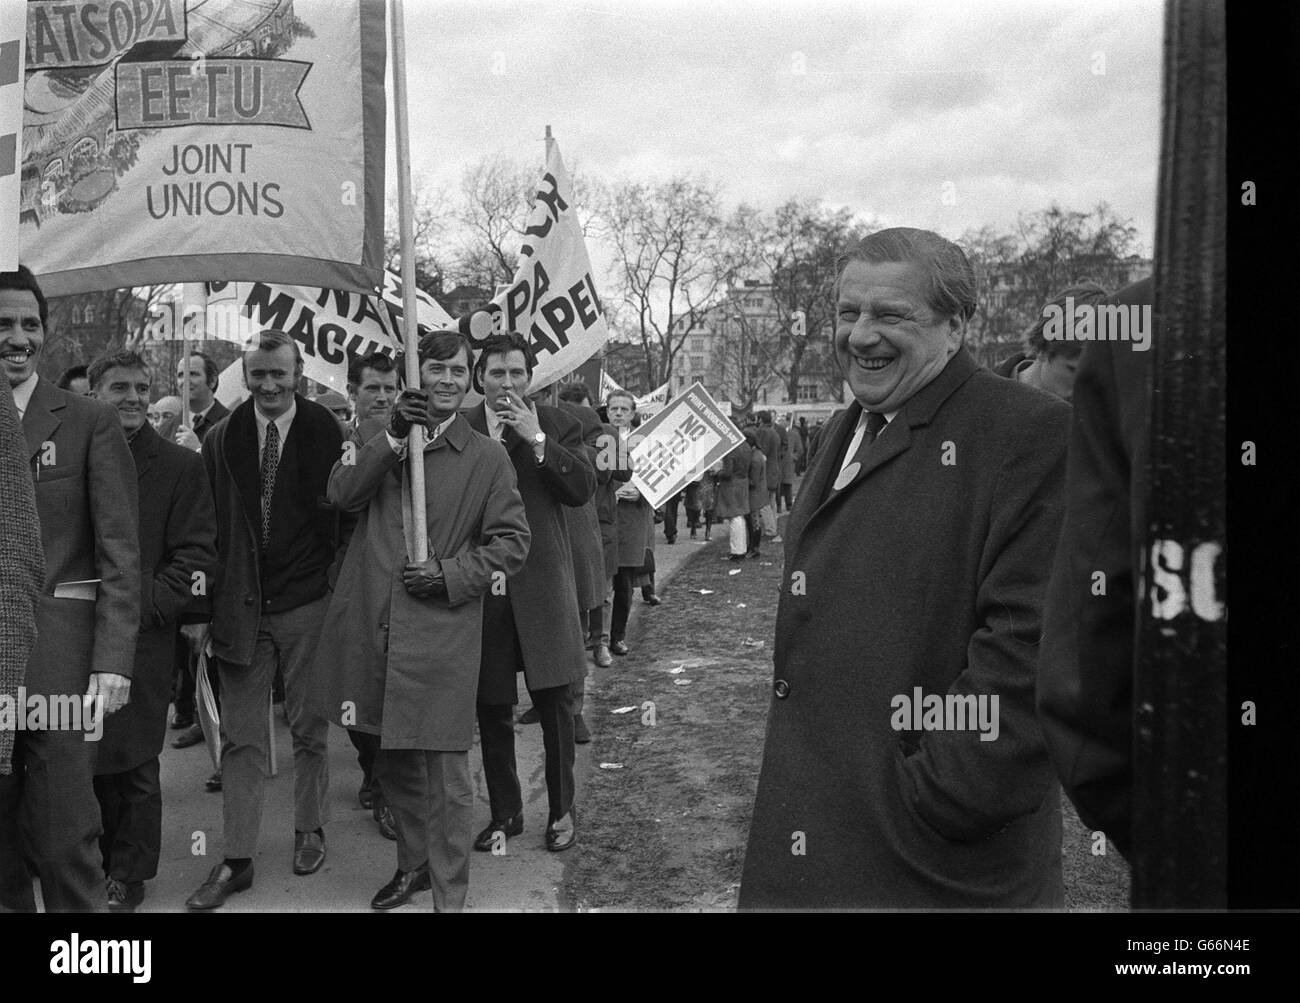 Sunny lächelt zu einer ernsten Gelegenheit für TUC-Generalsekretär Vic Feather und Gewerkschaftdemonstranten, als sie einen marsch vom Speaker's Corner Hyde Park zum Trafalgar Square in einer organisierten Parade gegen das Gesetz für Arbeitsbeziehungen der Regierung starteten. Stockfoto